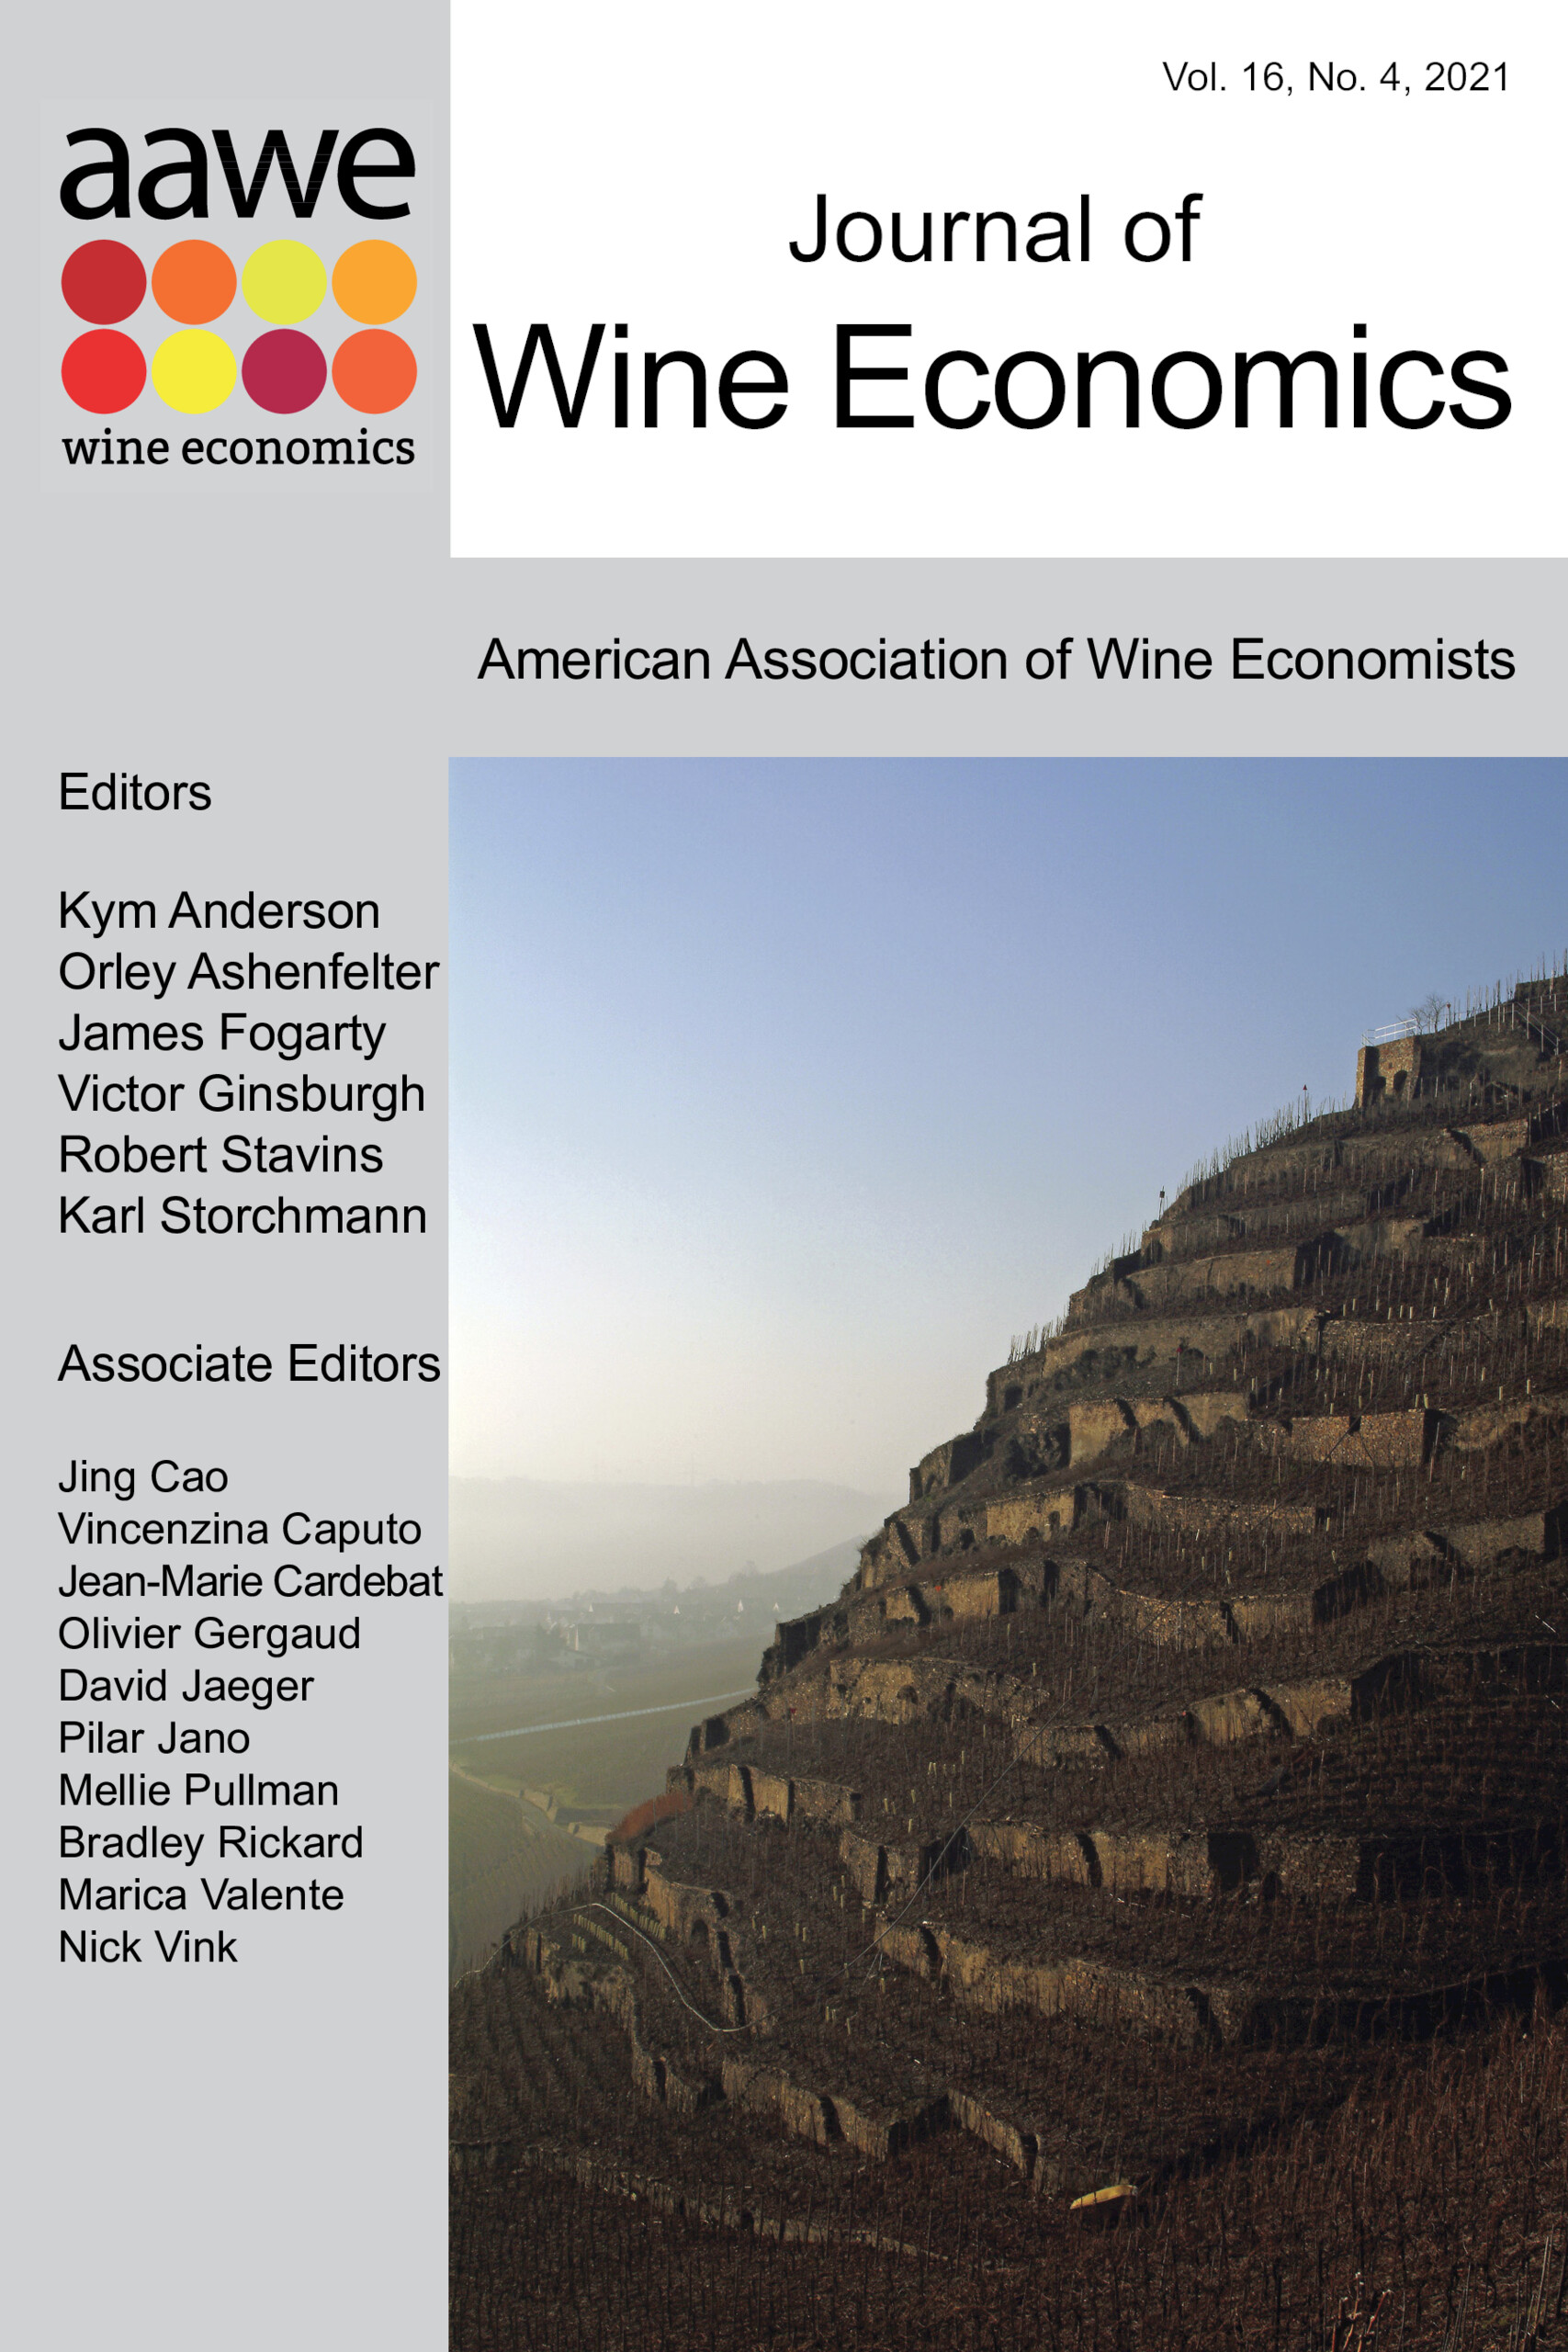 Journal of Wine Economics: Volume 16 - Issue 4 | Cambridge Core